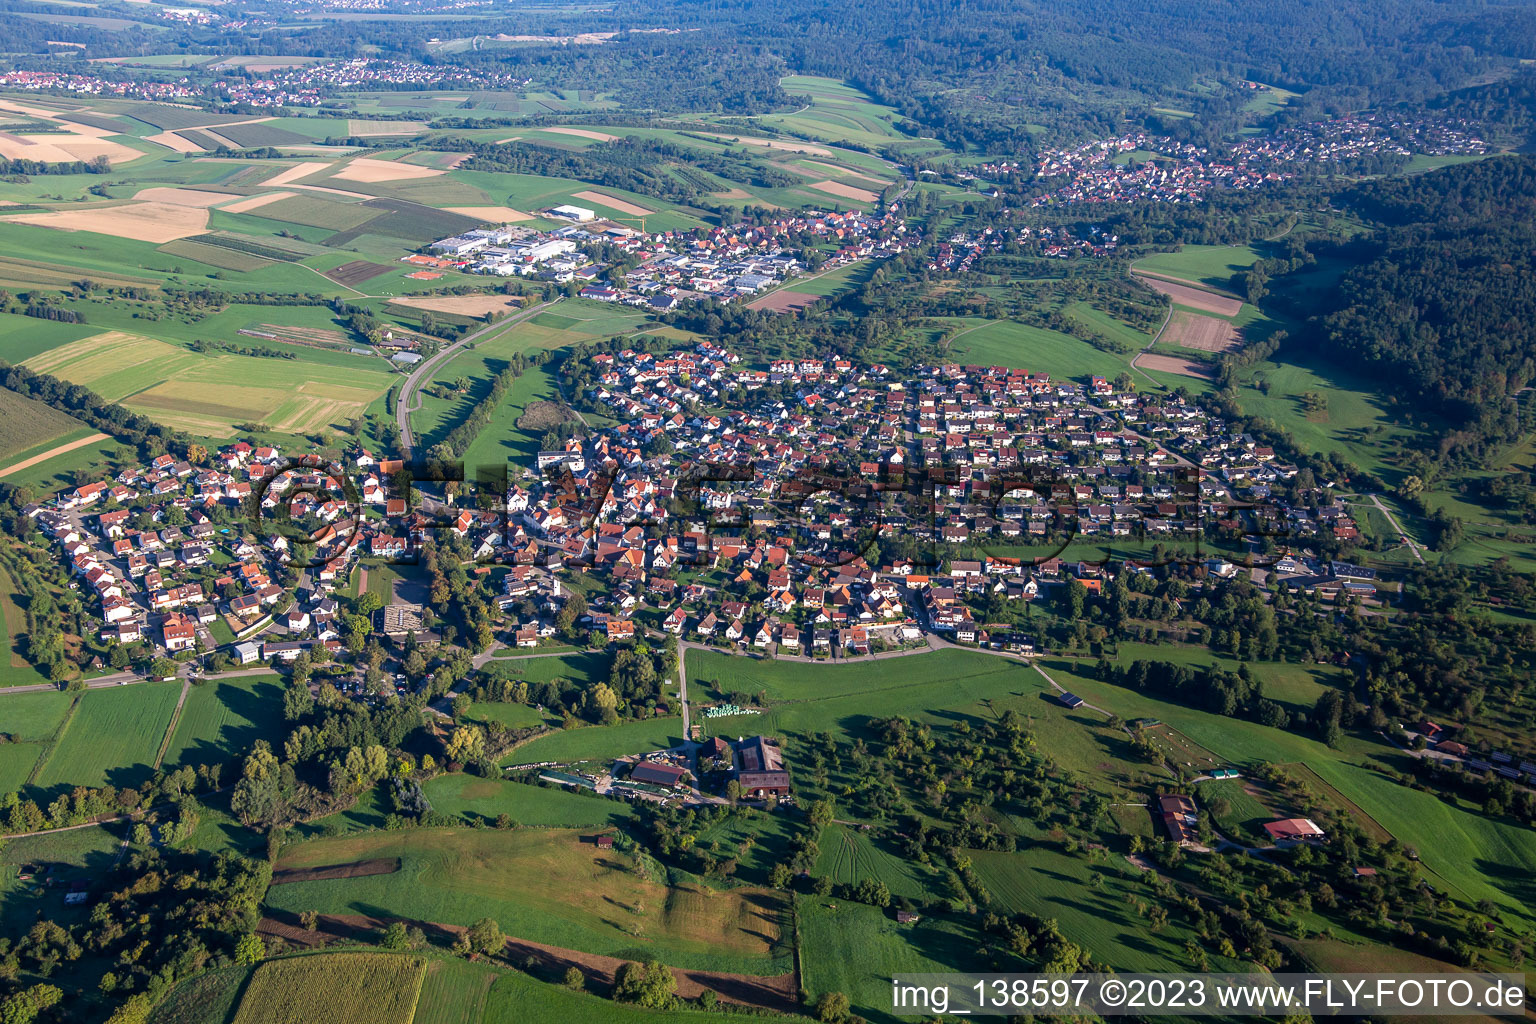 Vue aérienne de Quartier Unterbrüden in Auenwald dans le département Bade-Wurtemberg, Allemagne